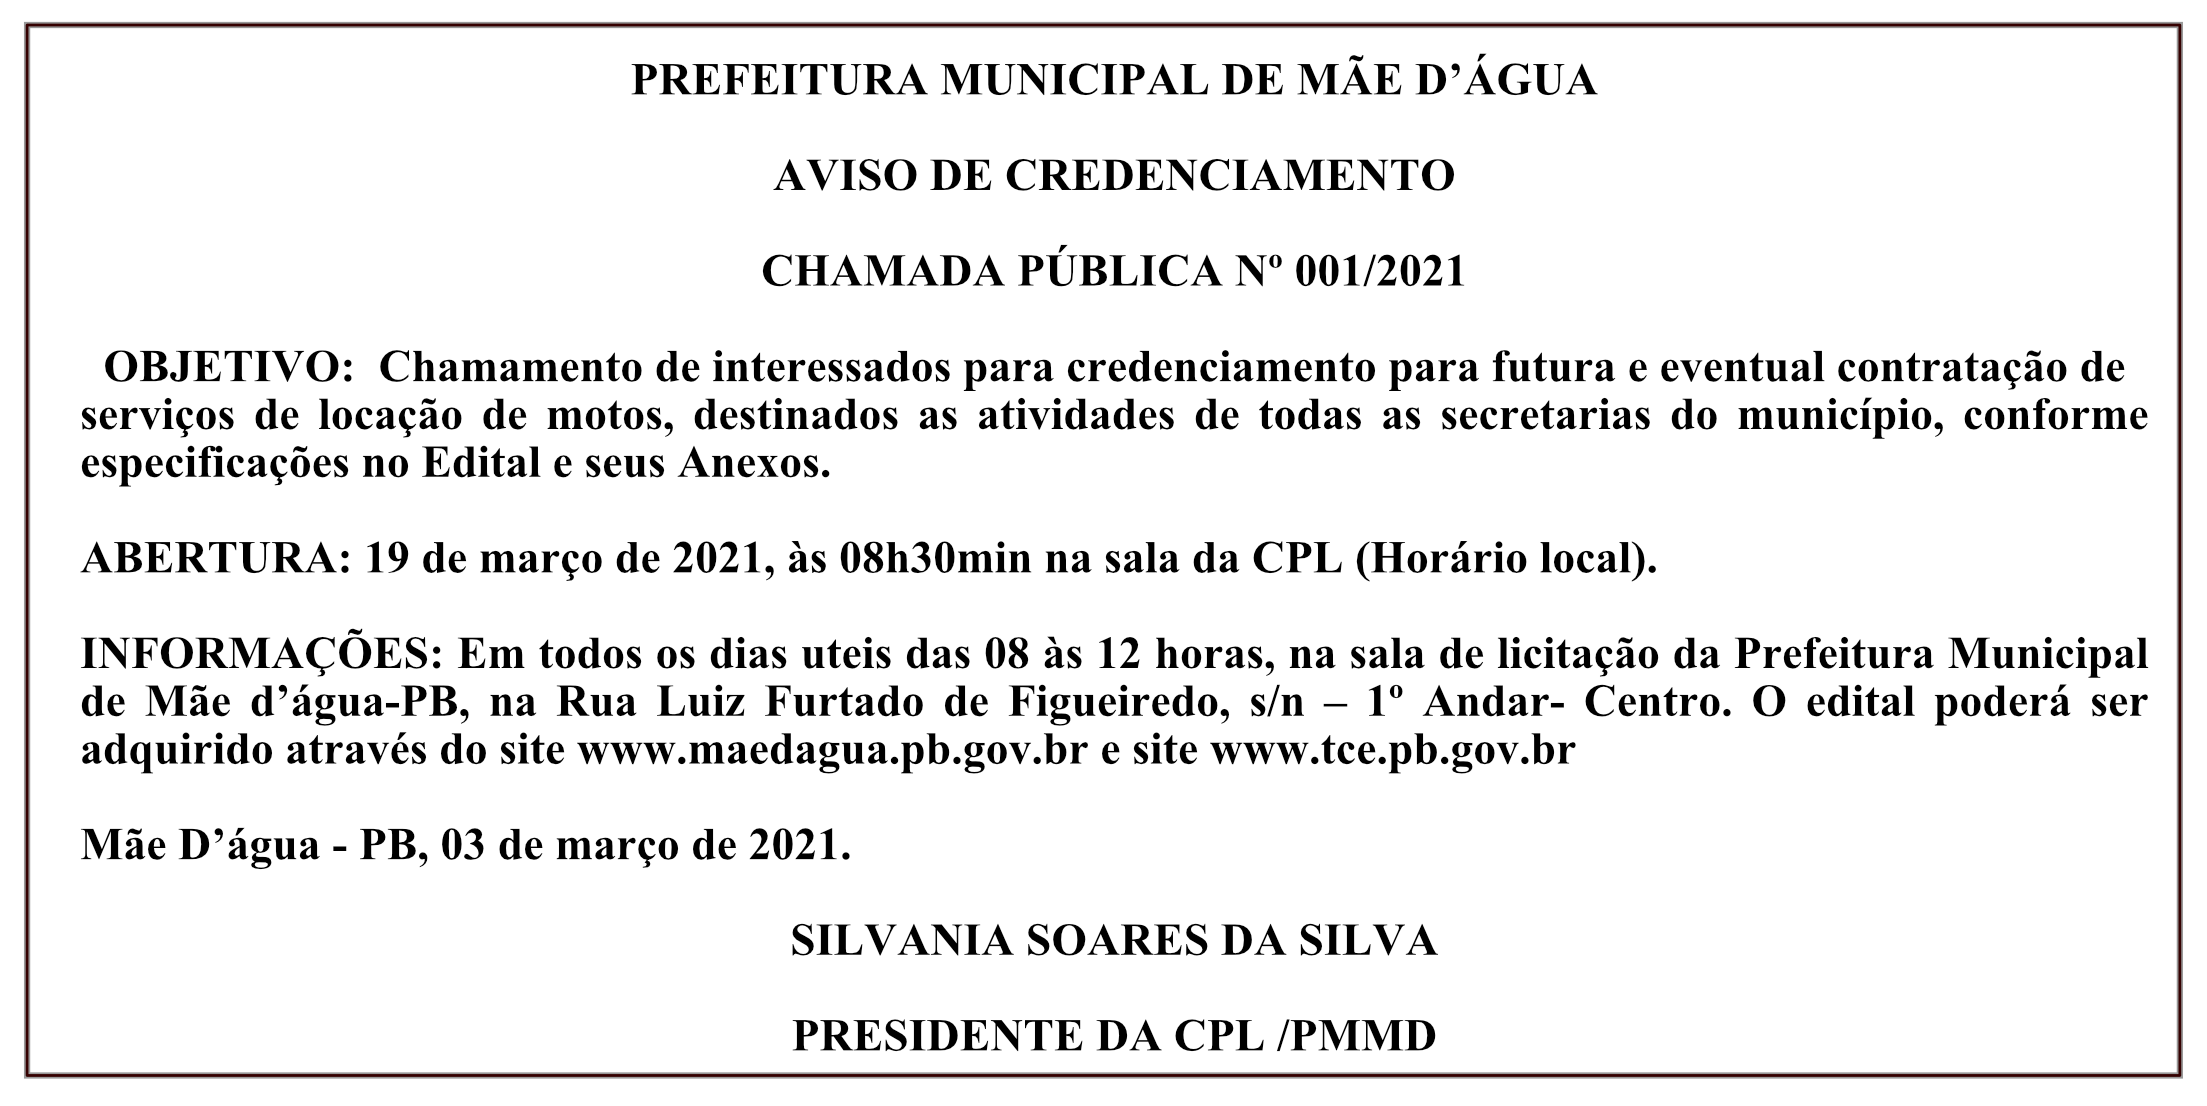 PREFEITURA MUNICIPAL DE MÃE D’ÁGUA – AVISO DE CREDENCIAMENTO – CHAMADA PÚBLICA Nº 001/2021